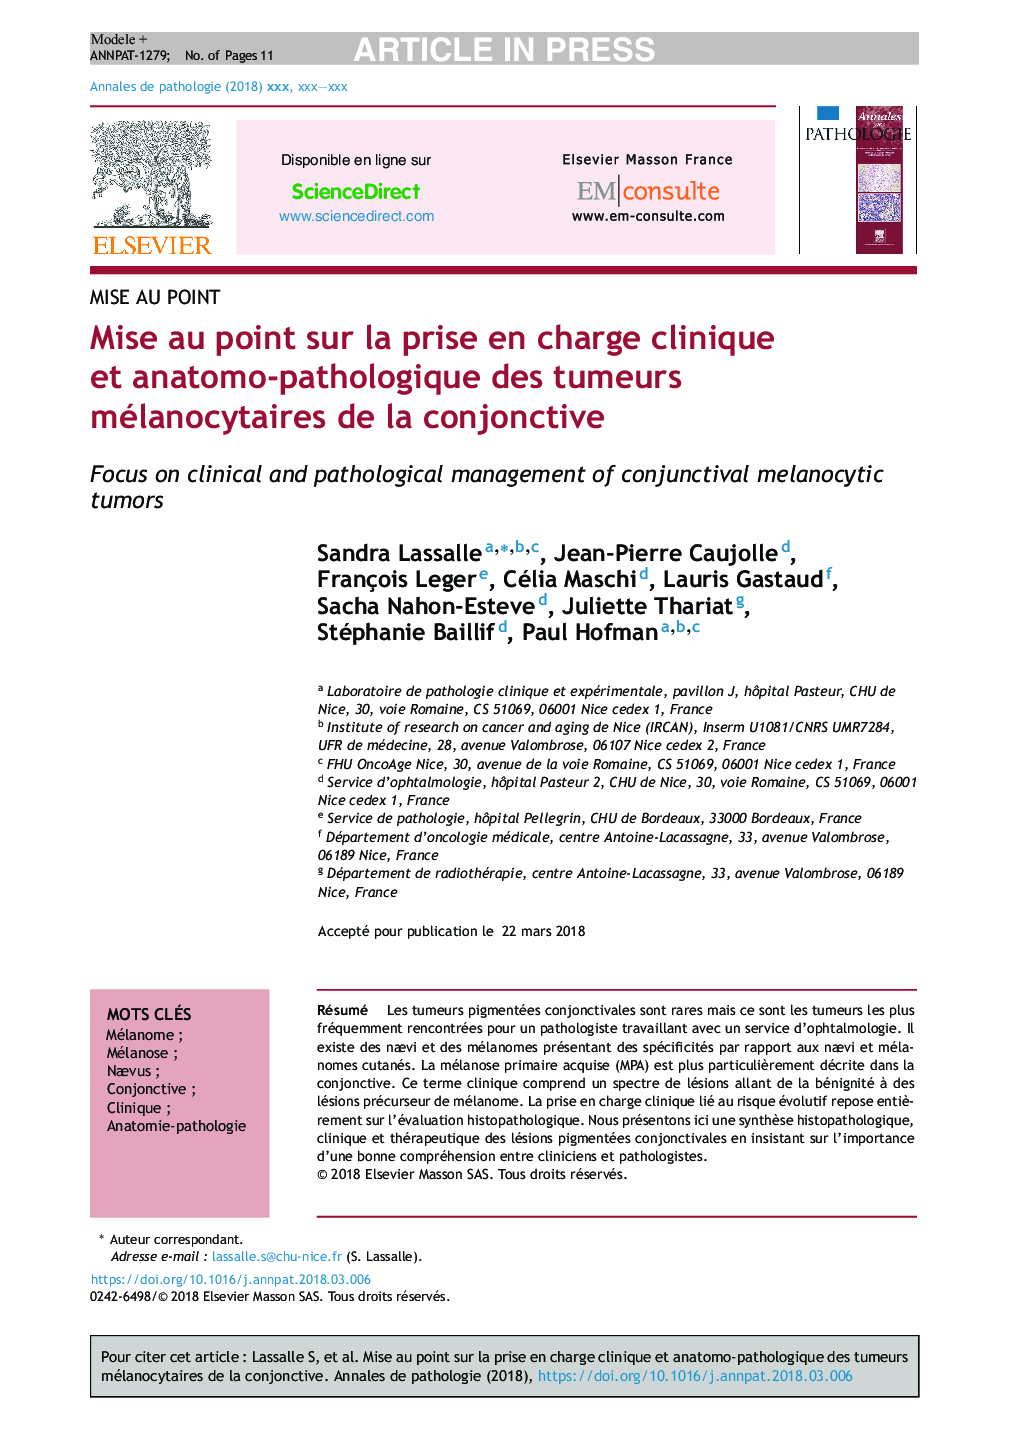 Mise au point sur la prise en charge clinique et anatomo-pathologique des tumeurs mélanocytaires de la conjonctive